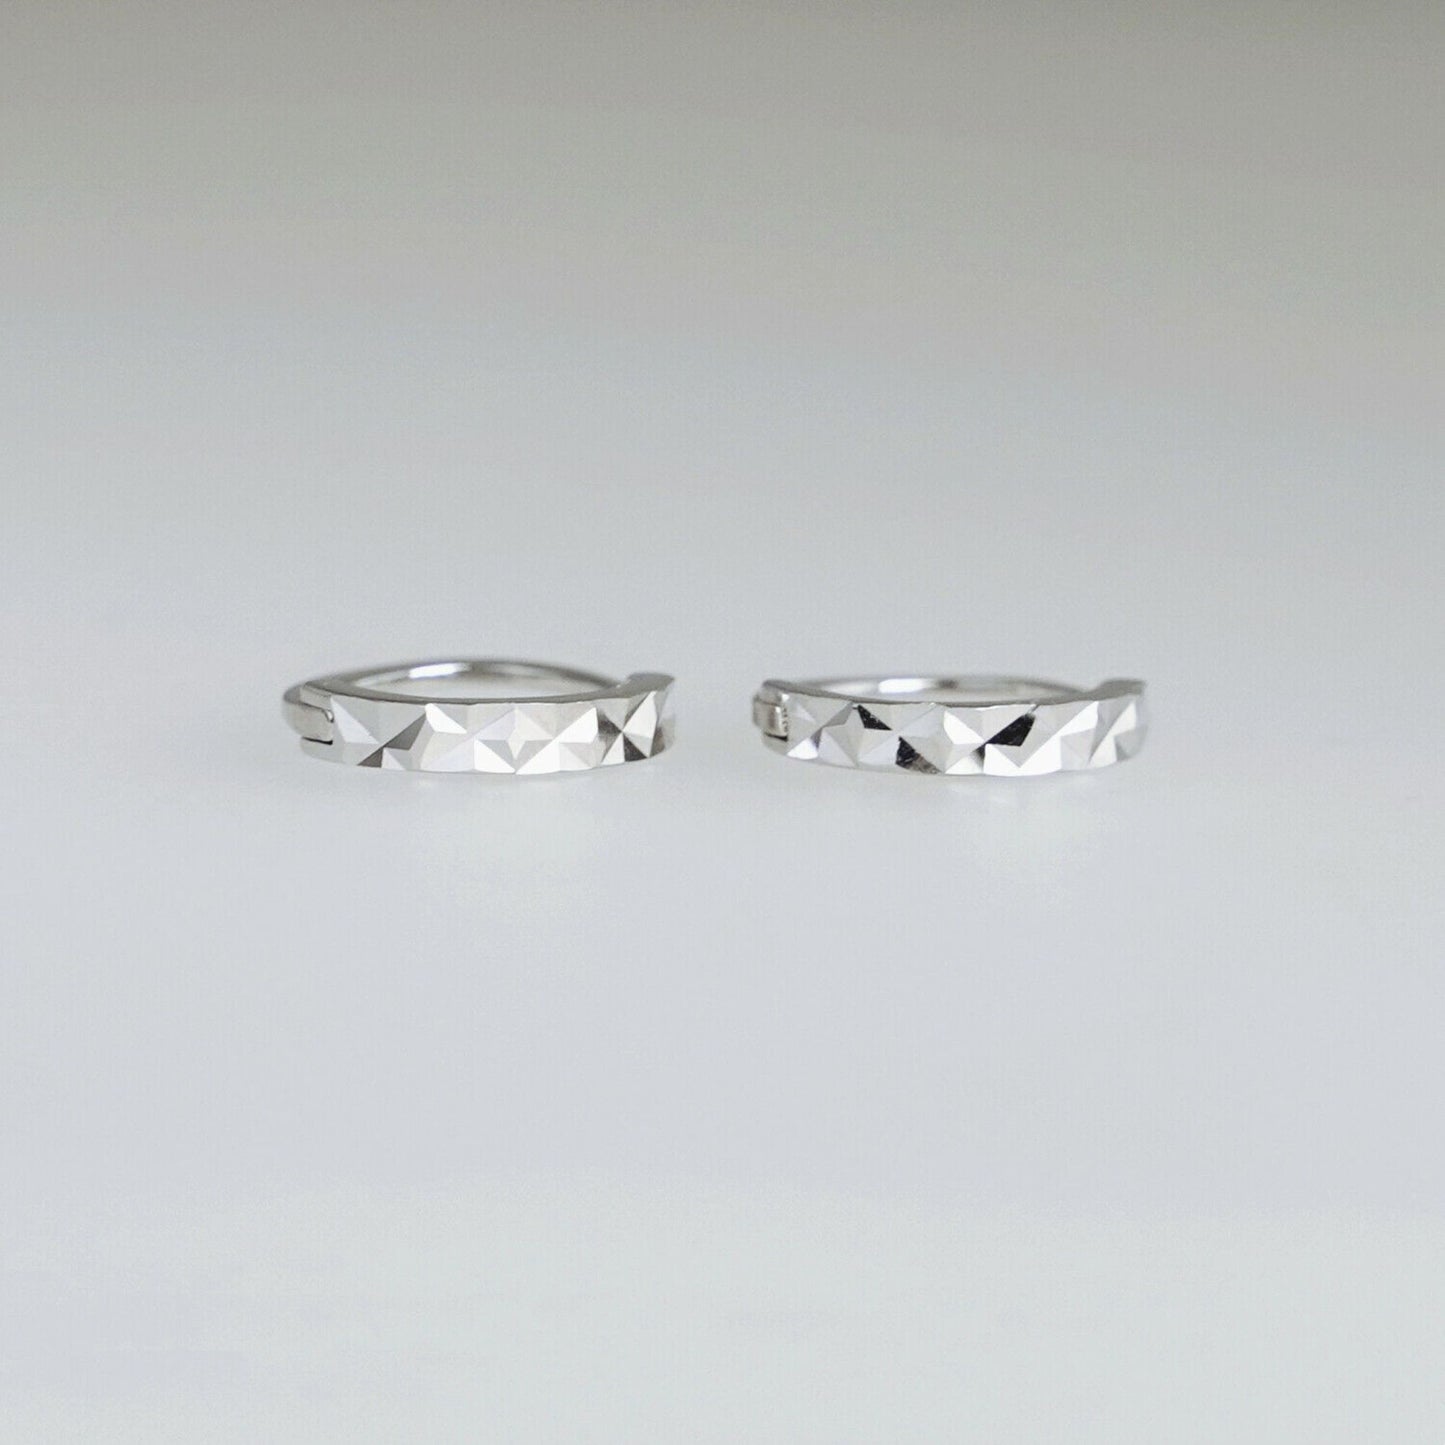 925 Sterling Silver Cuff Earrings with Reverse Worn Plain Diamond Cut Small Hoop - sugarkittenlondon